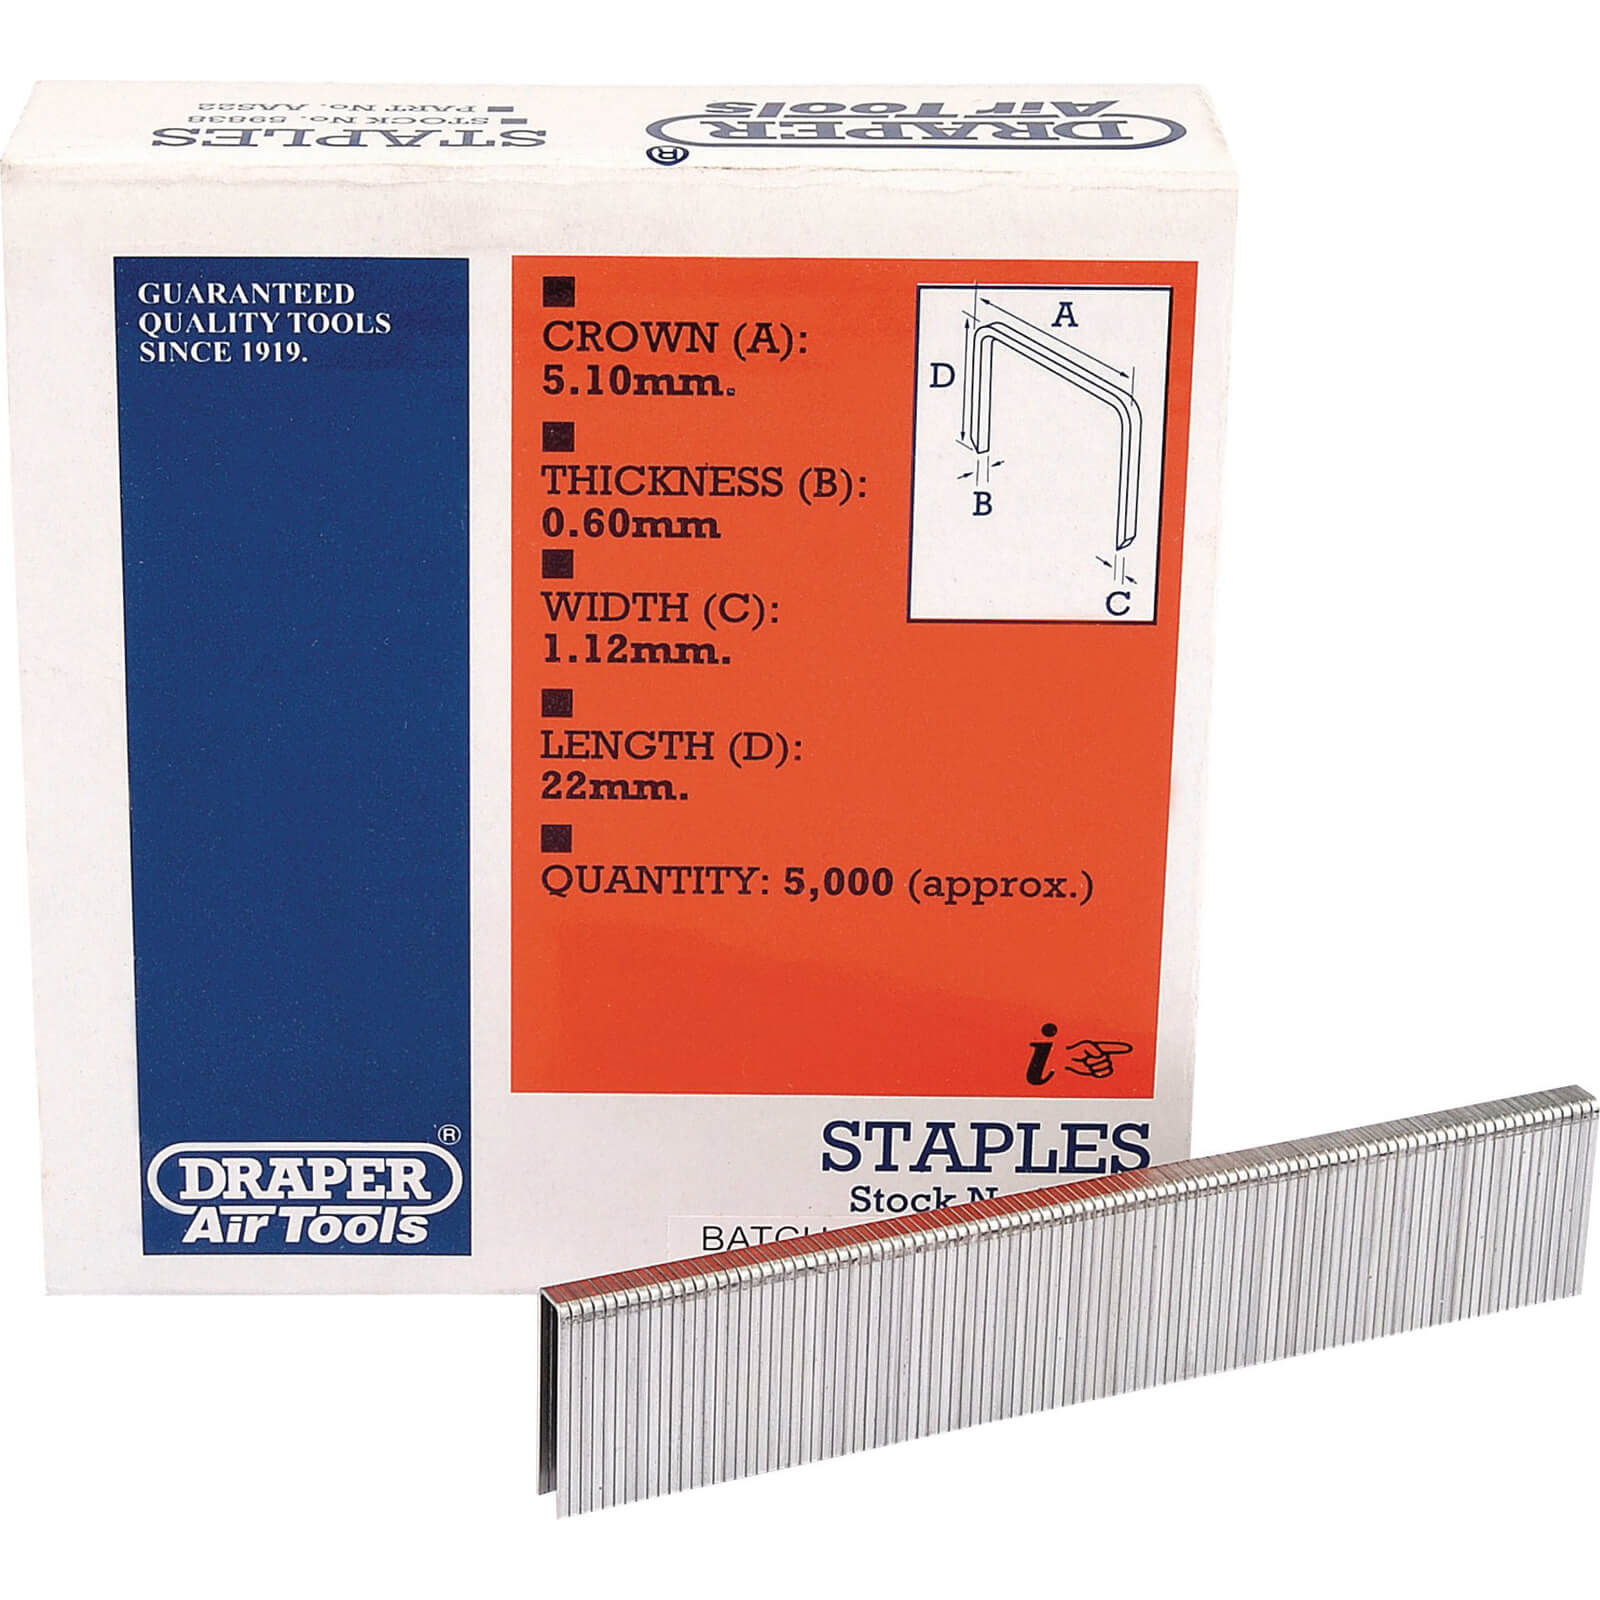 Image of Draper Staple 22mm Pack of 5000